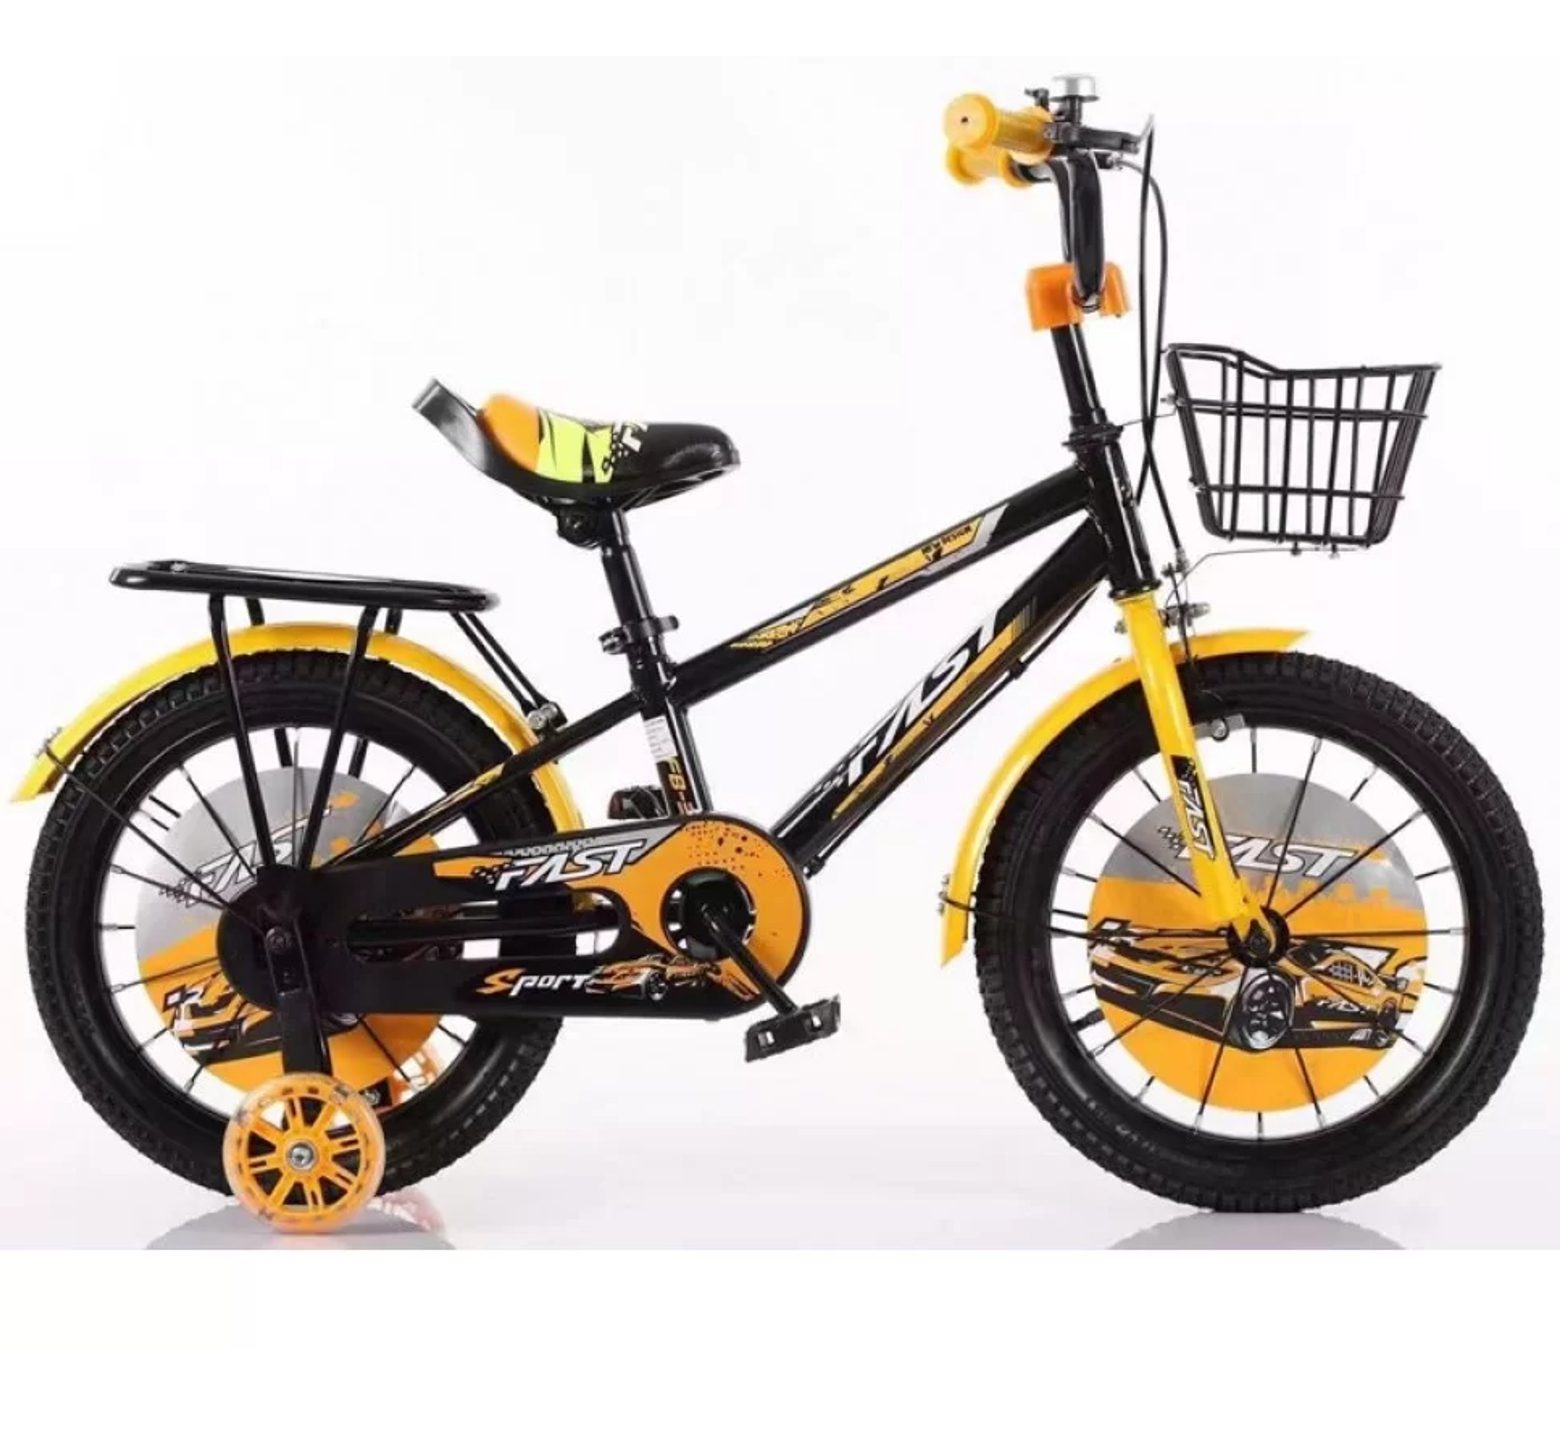 Ποδήλατο Fast Sport 12 - 16 ιντσών με καλάθι και σχάρα σε μαύρο πορτοκαλί χρώμα